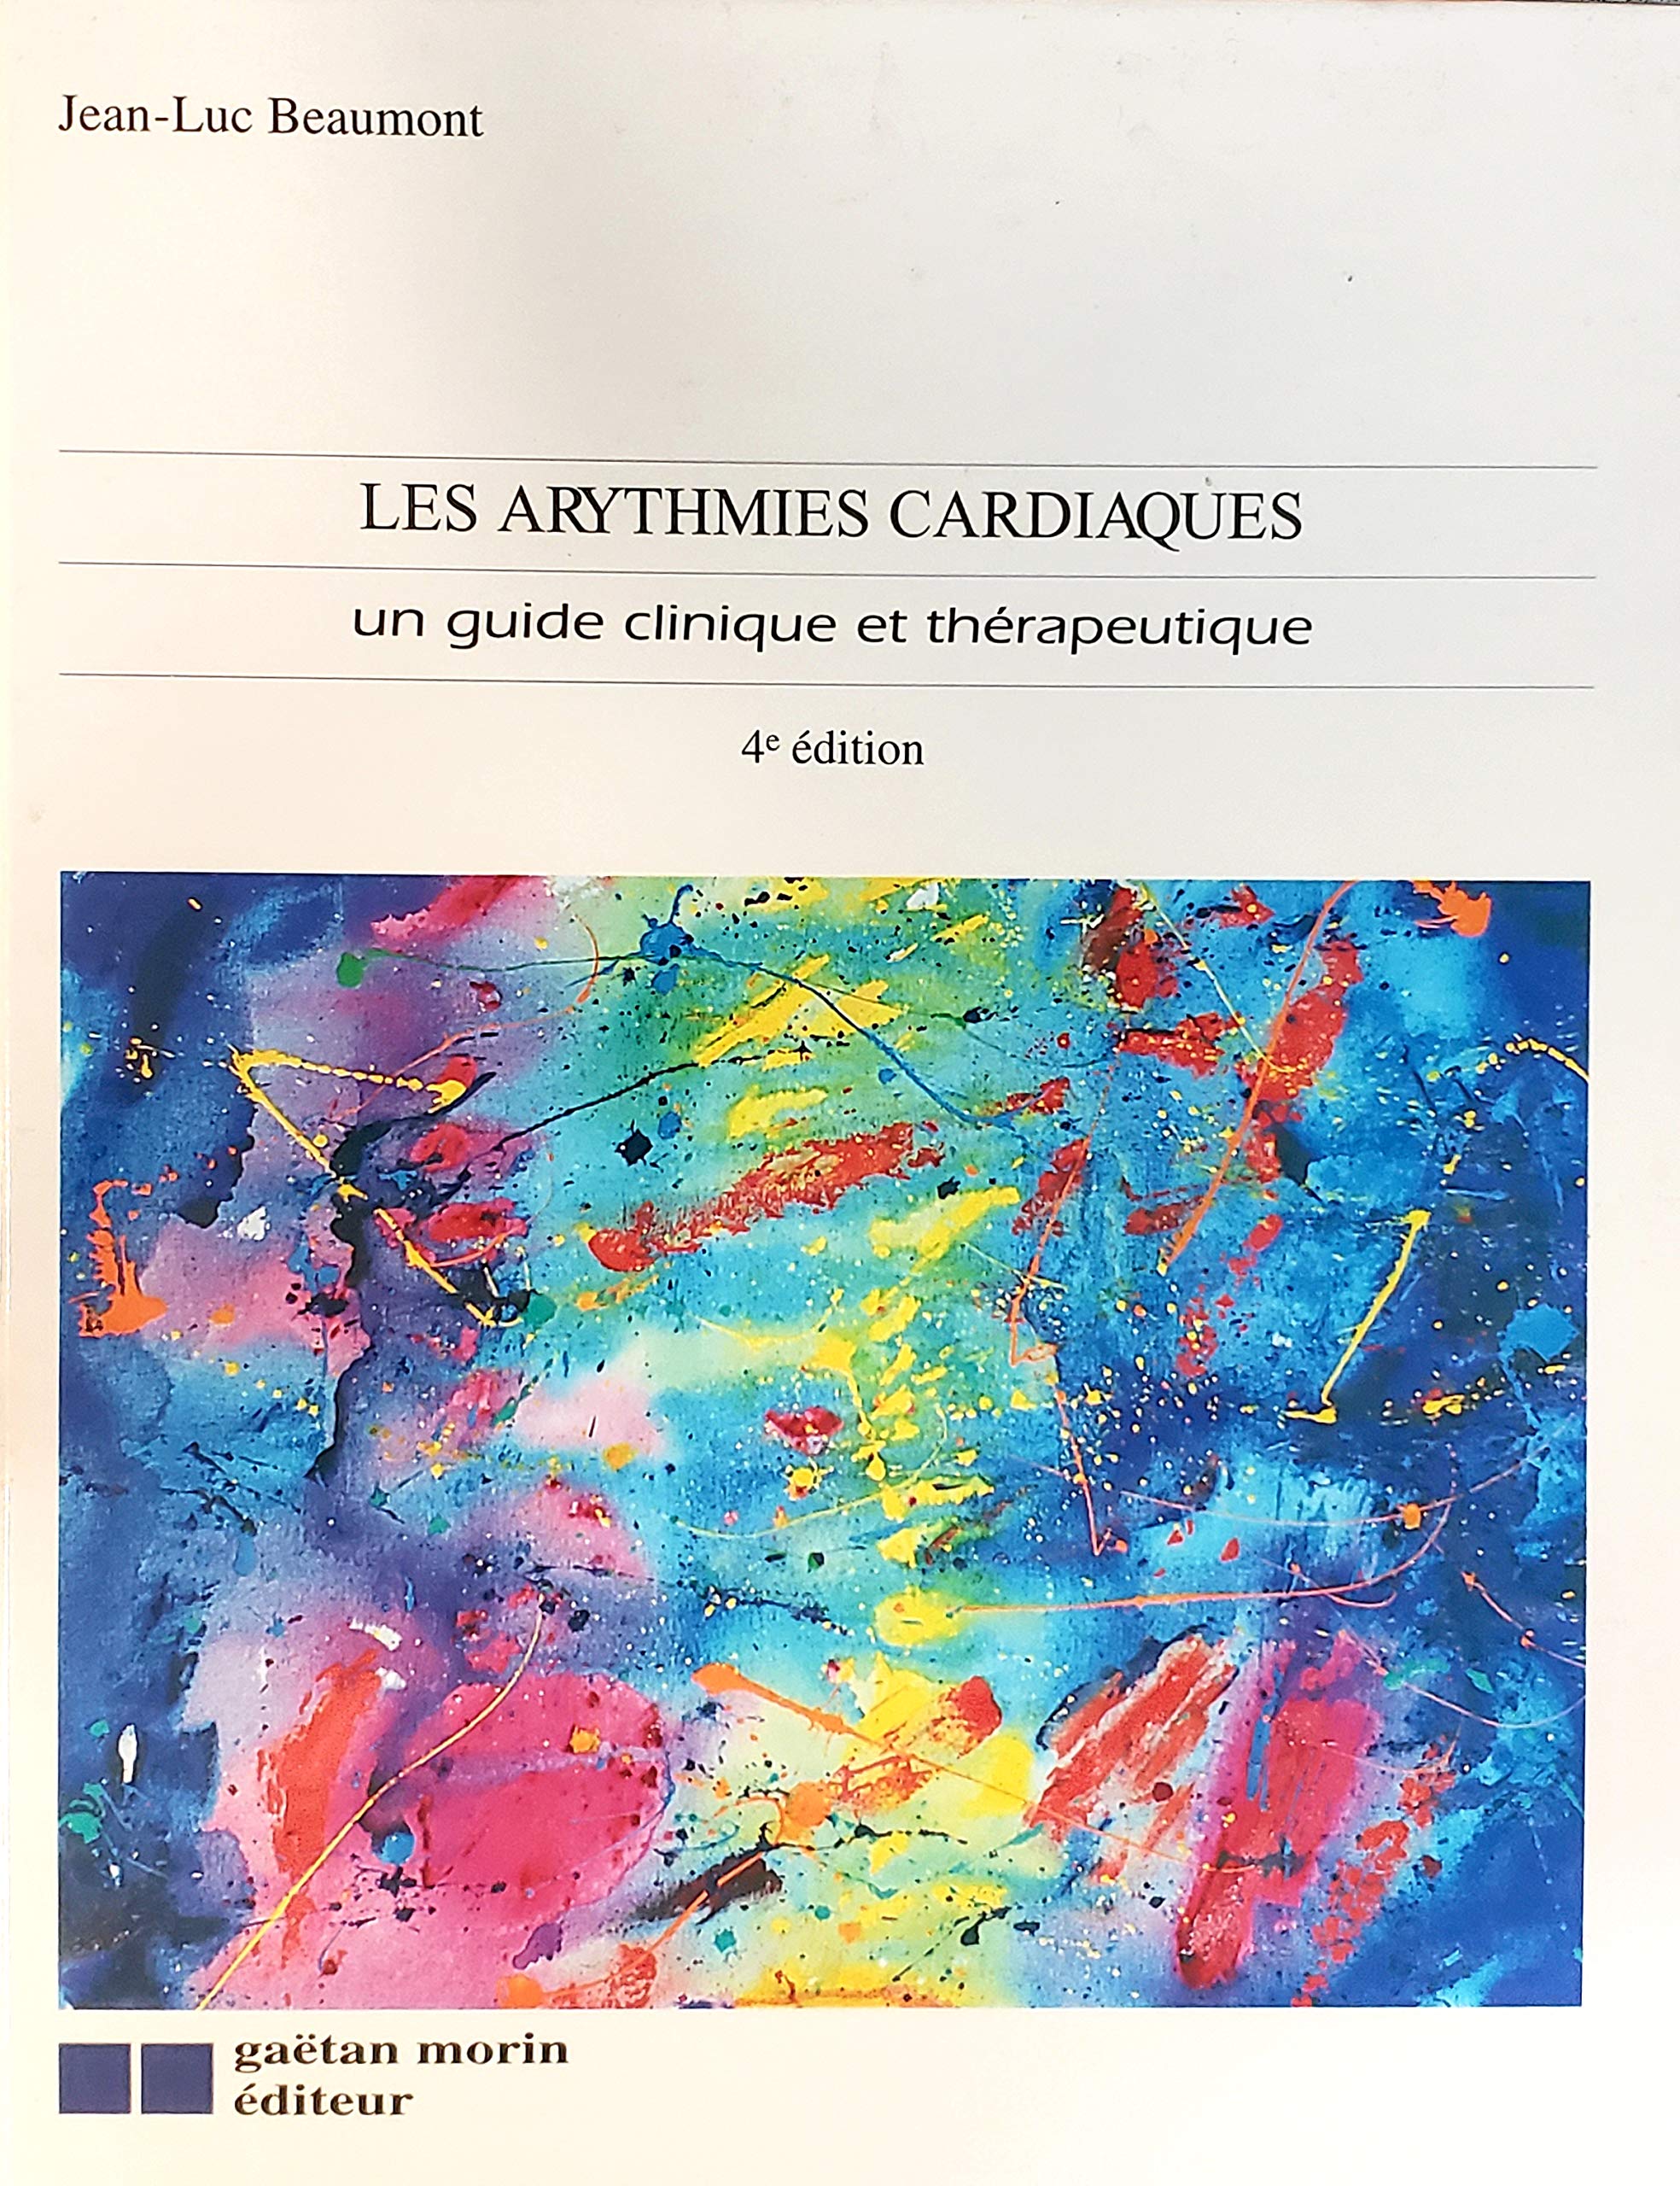 Livre ISBN 2891056841 Les arythmies cardiaques: Un guide clinique et thérapeutique (Jean-Luc Beaumont)